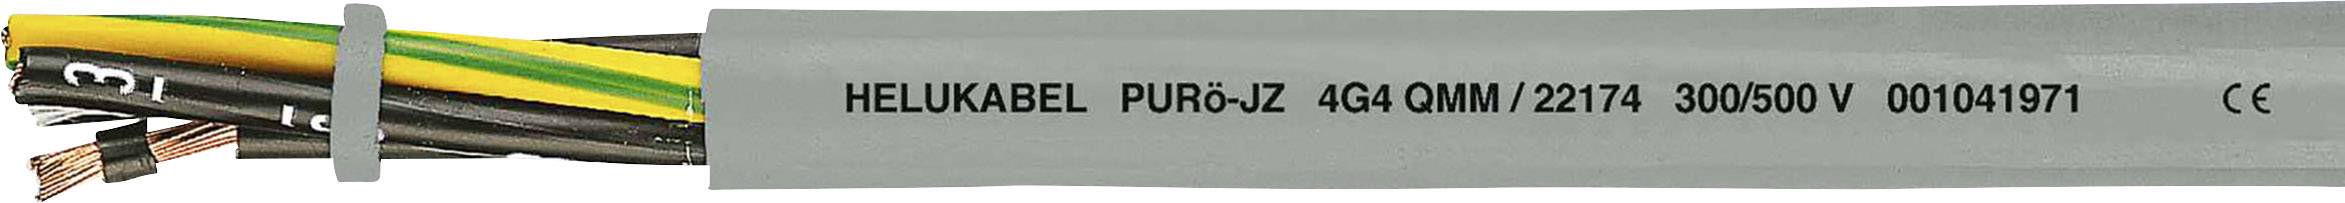 HELUKABEL PURö-JZ Steuerleitung 3 G 0.50 mm² Grau 22101-1000 1000 m